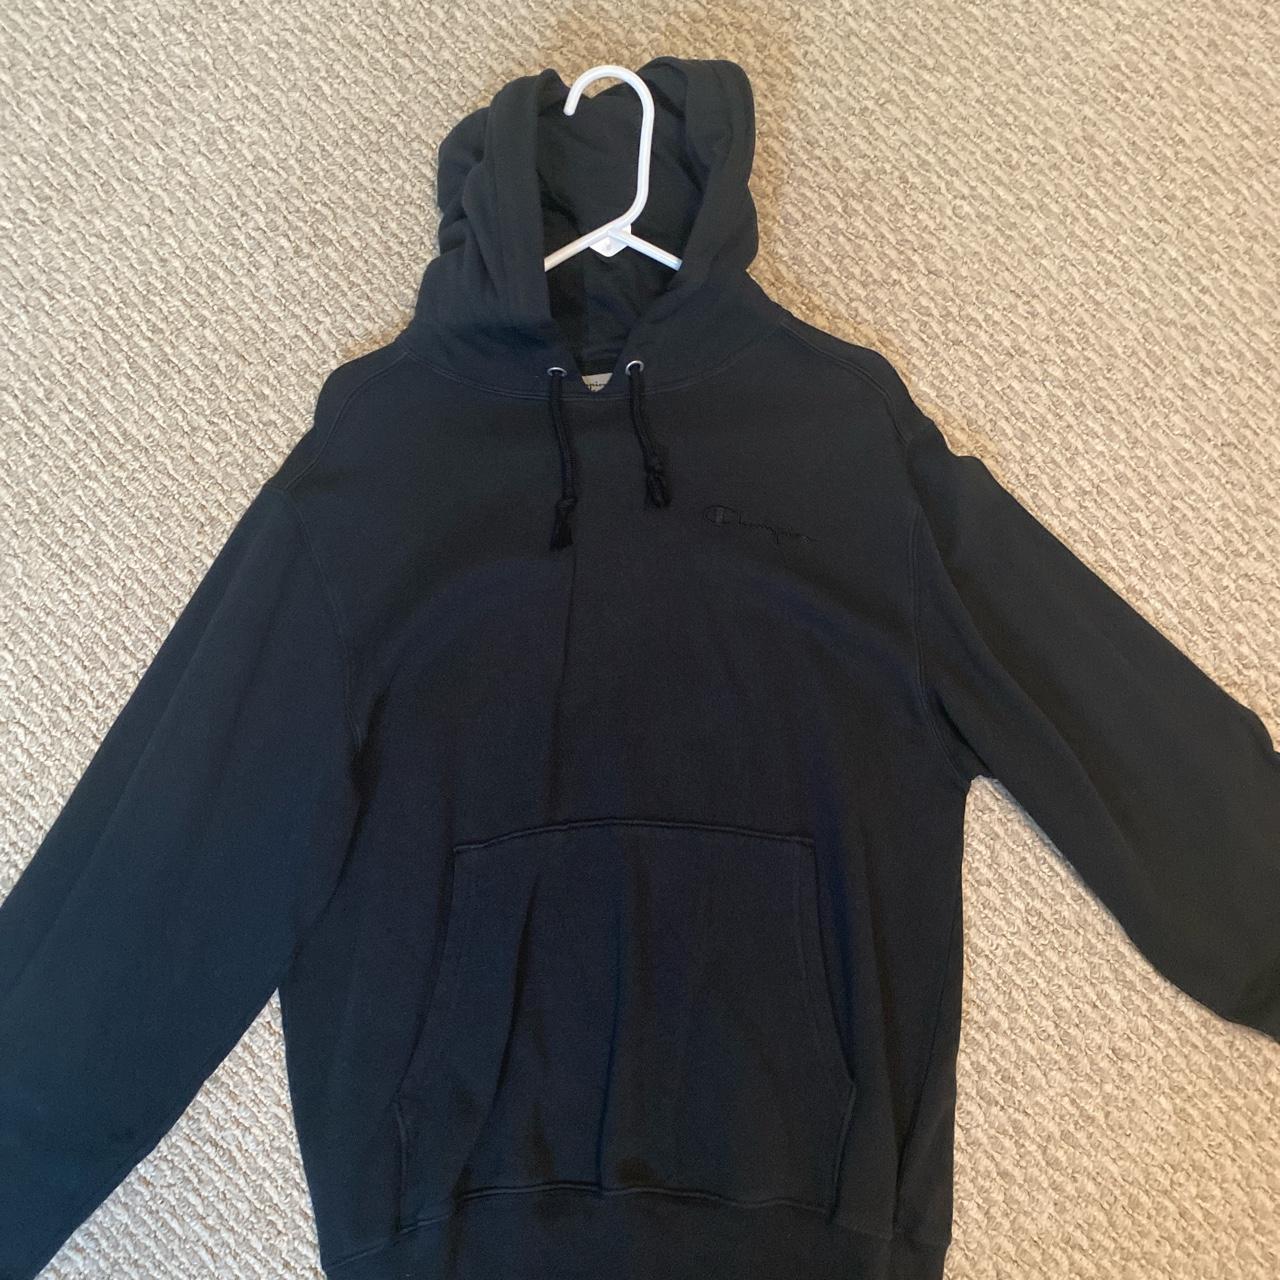 Black champion hoodie (baggy/loose) Size:... - Depop